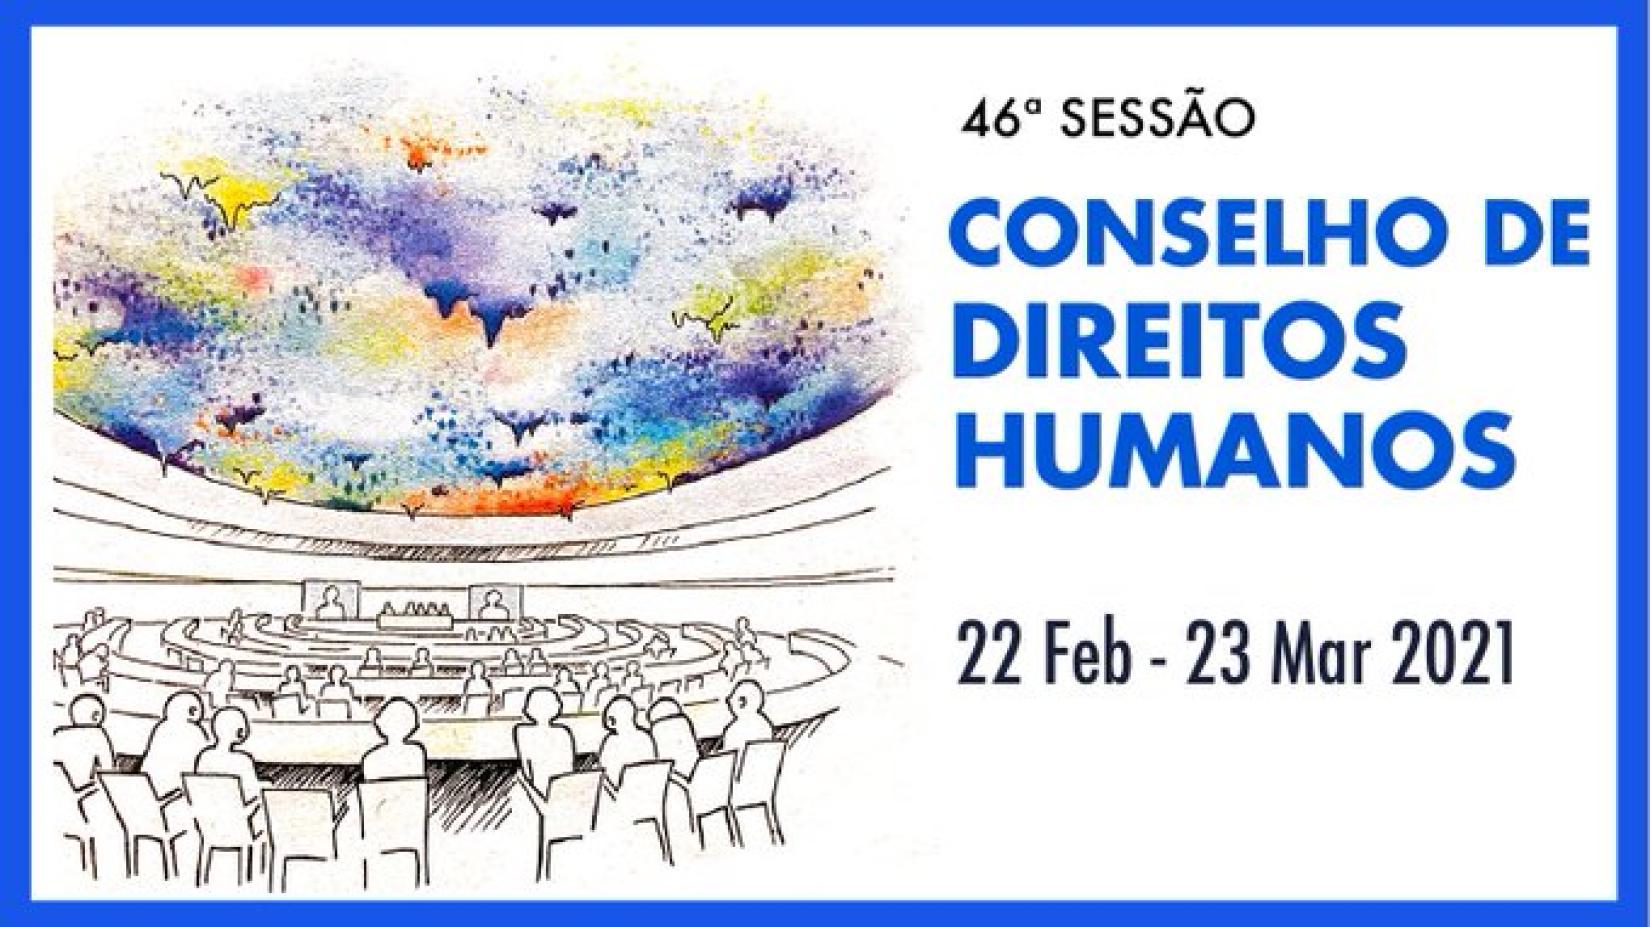 Conselho de Direitos Humanos se reúne em Genebra, na Suíça